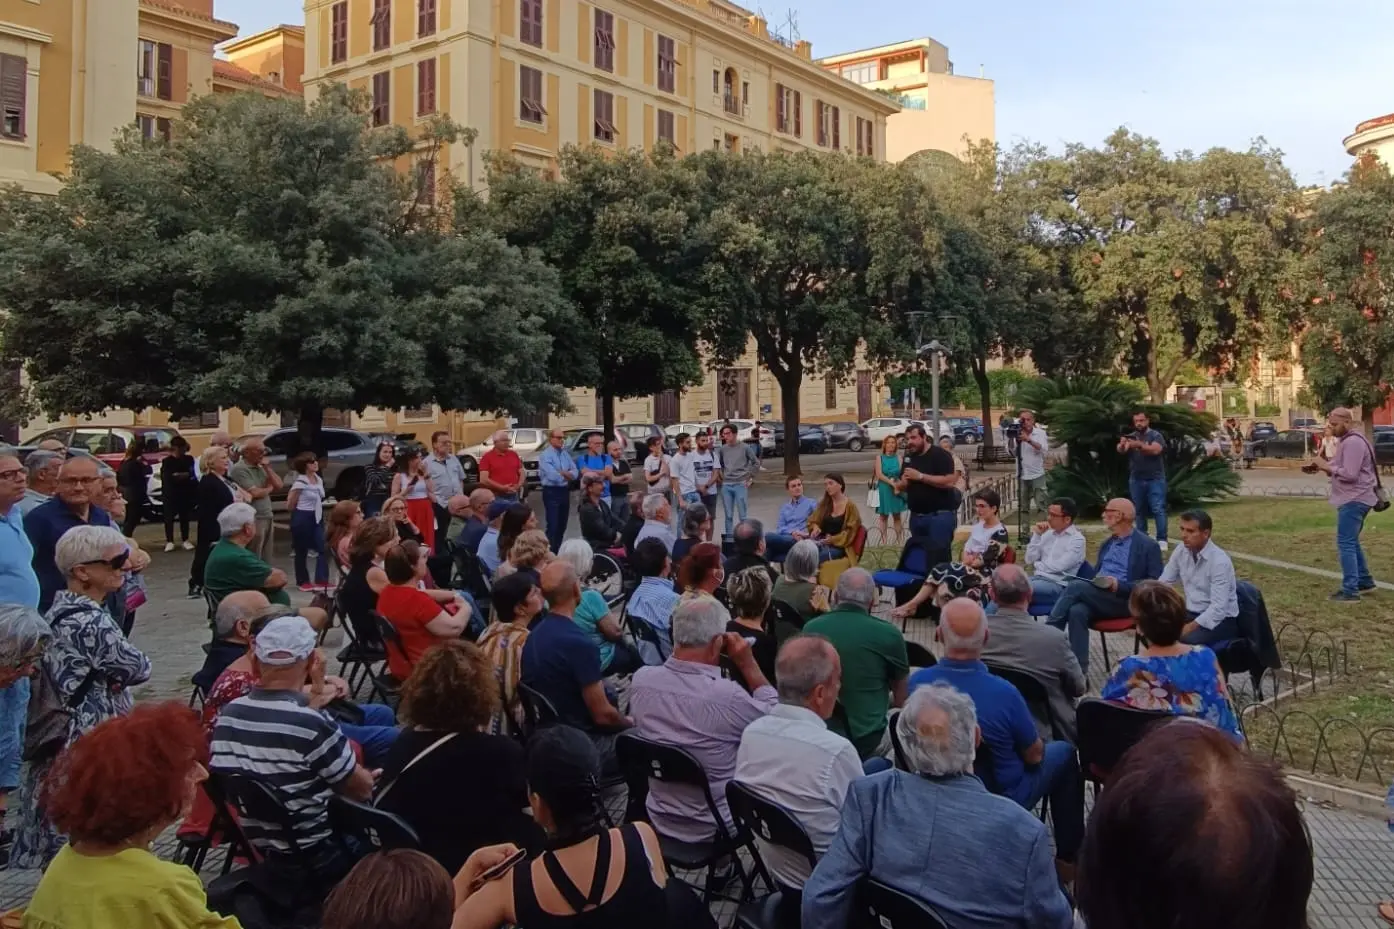 L'assemblea in piazza Galilei a Cagliari  (L'Unione Sarda)